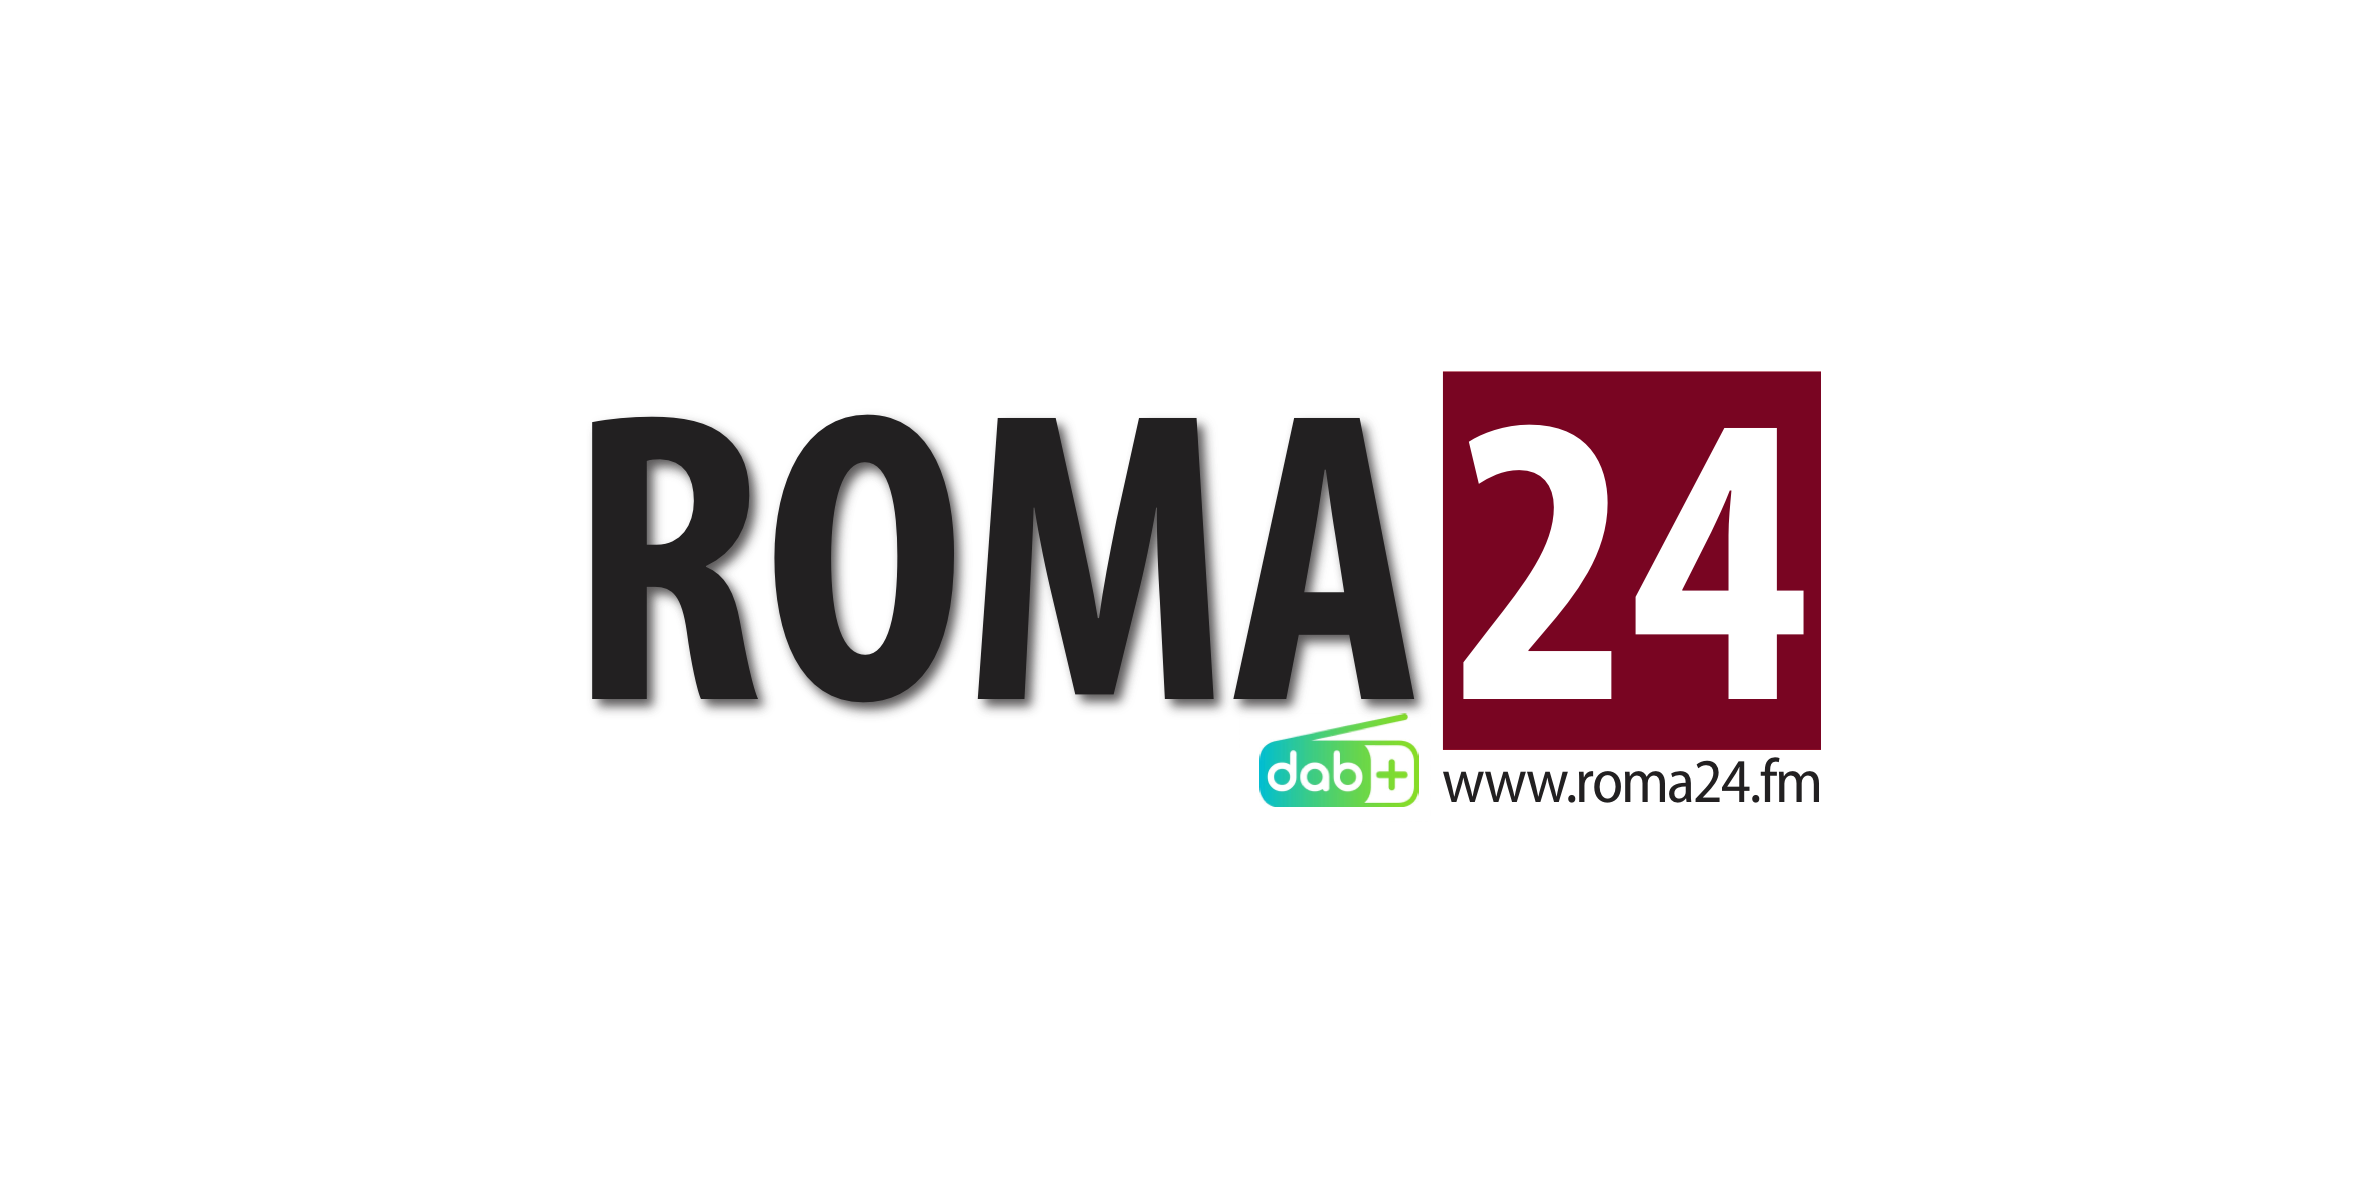 roma24.fm